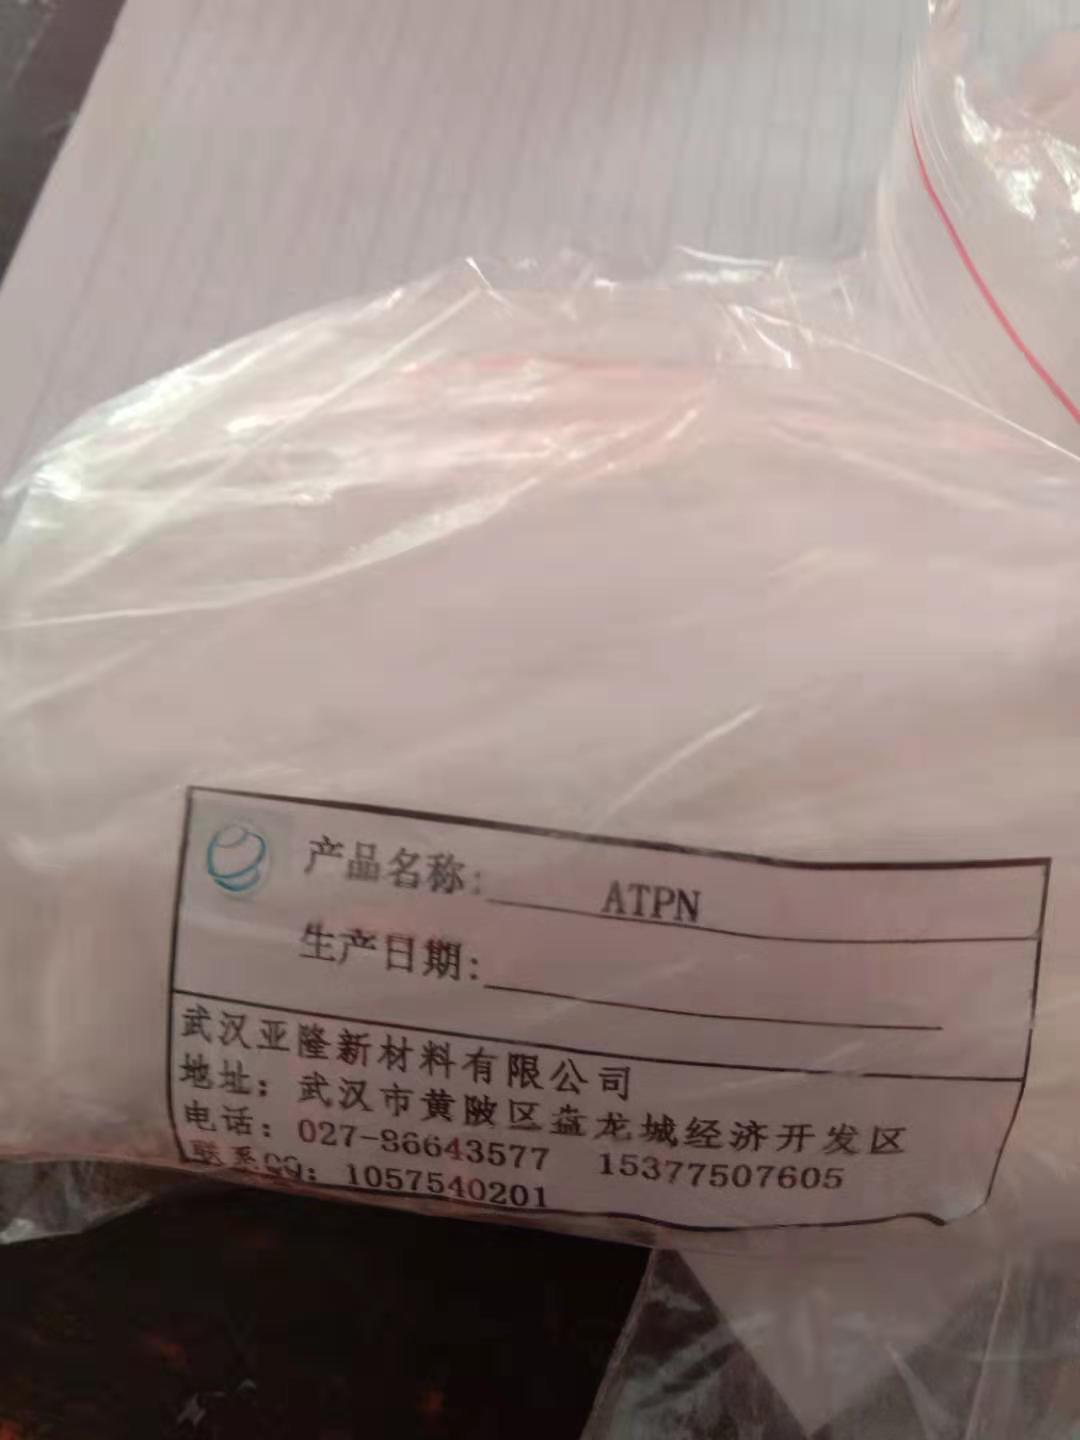 羧乙基异硫脲嗡盐ATPN,Mixture of chemical substance containing nitrogen and sulphor